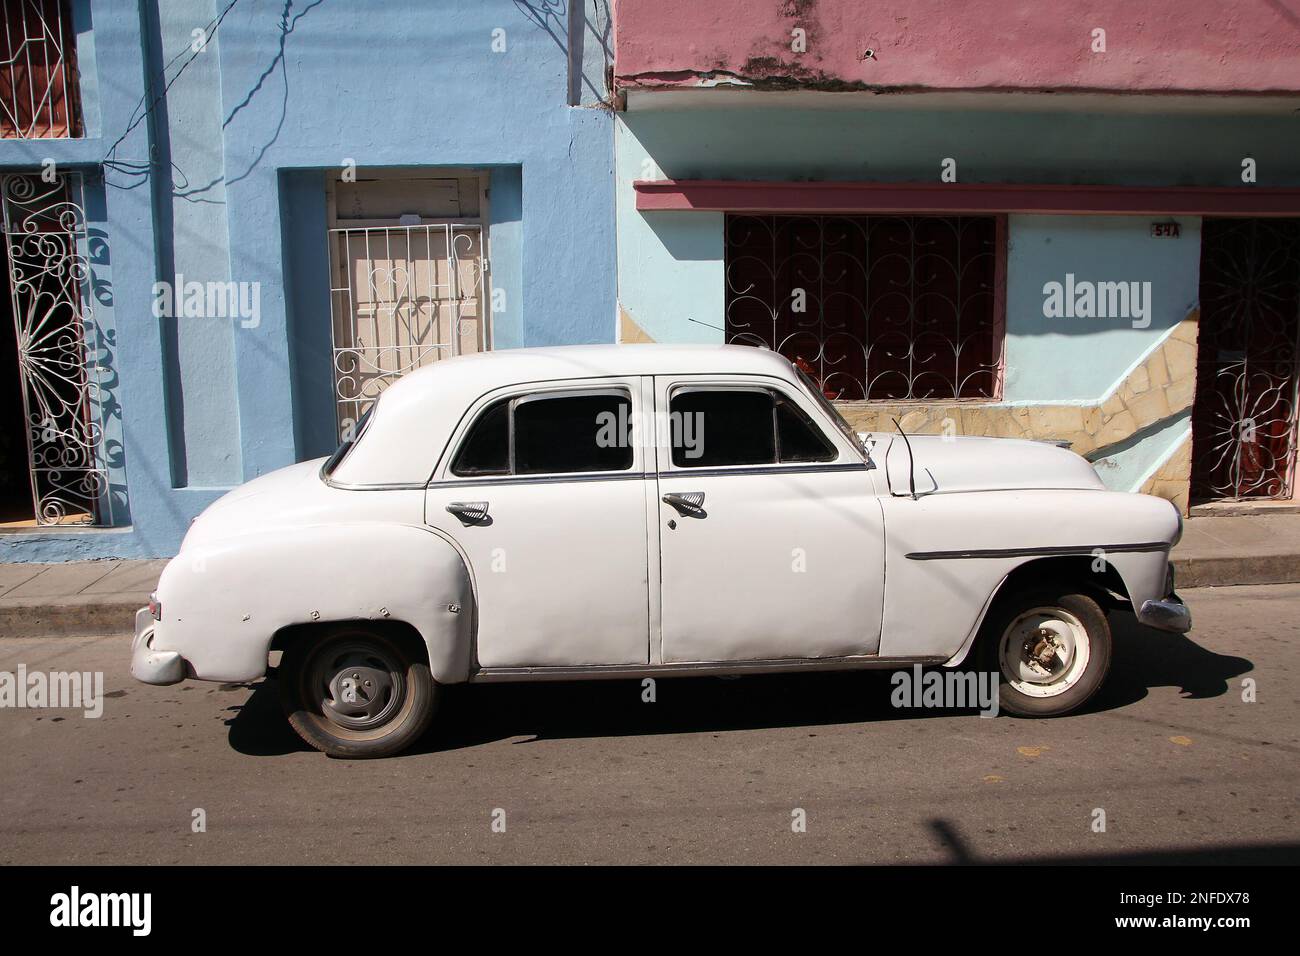 SANTA CLARA, CUBA - 21 FEBBRAIO 2011: Vecchia auto americana a Santa Clara. Cuba ha uno dei tassi di proprietà più bassi a causa dell'embargo commerciale. Foto Stock